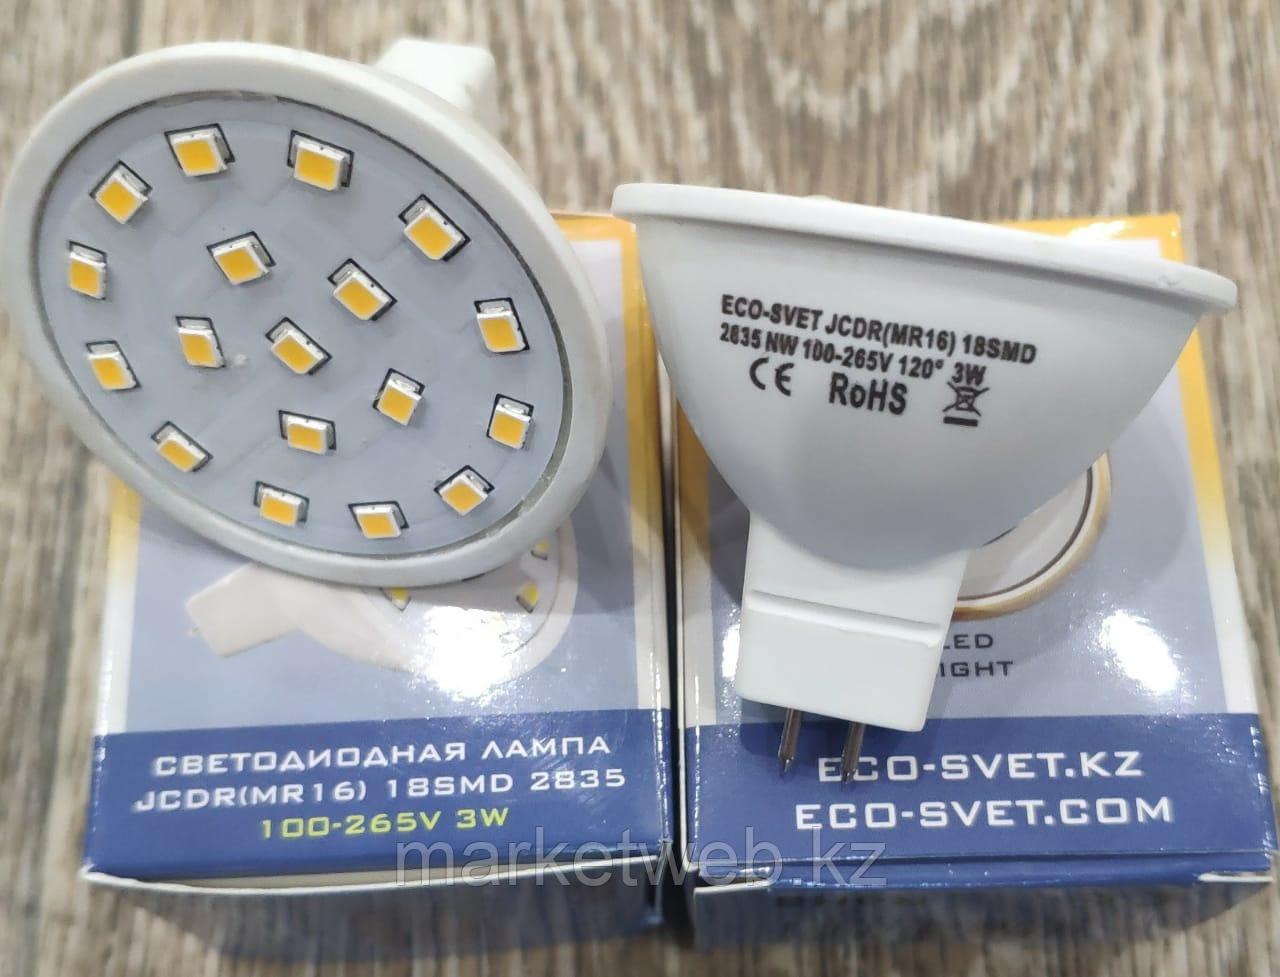 Лед Лампы  LED - JCDR MR16 3W  GU5.3 цена от 230 тенге, фото 1